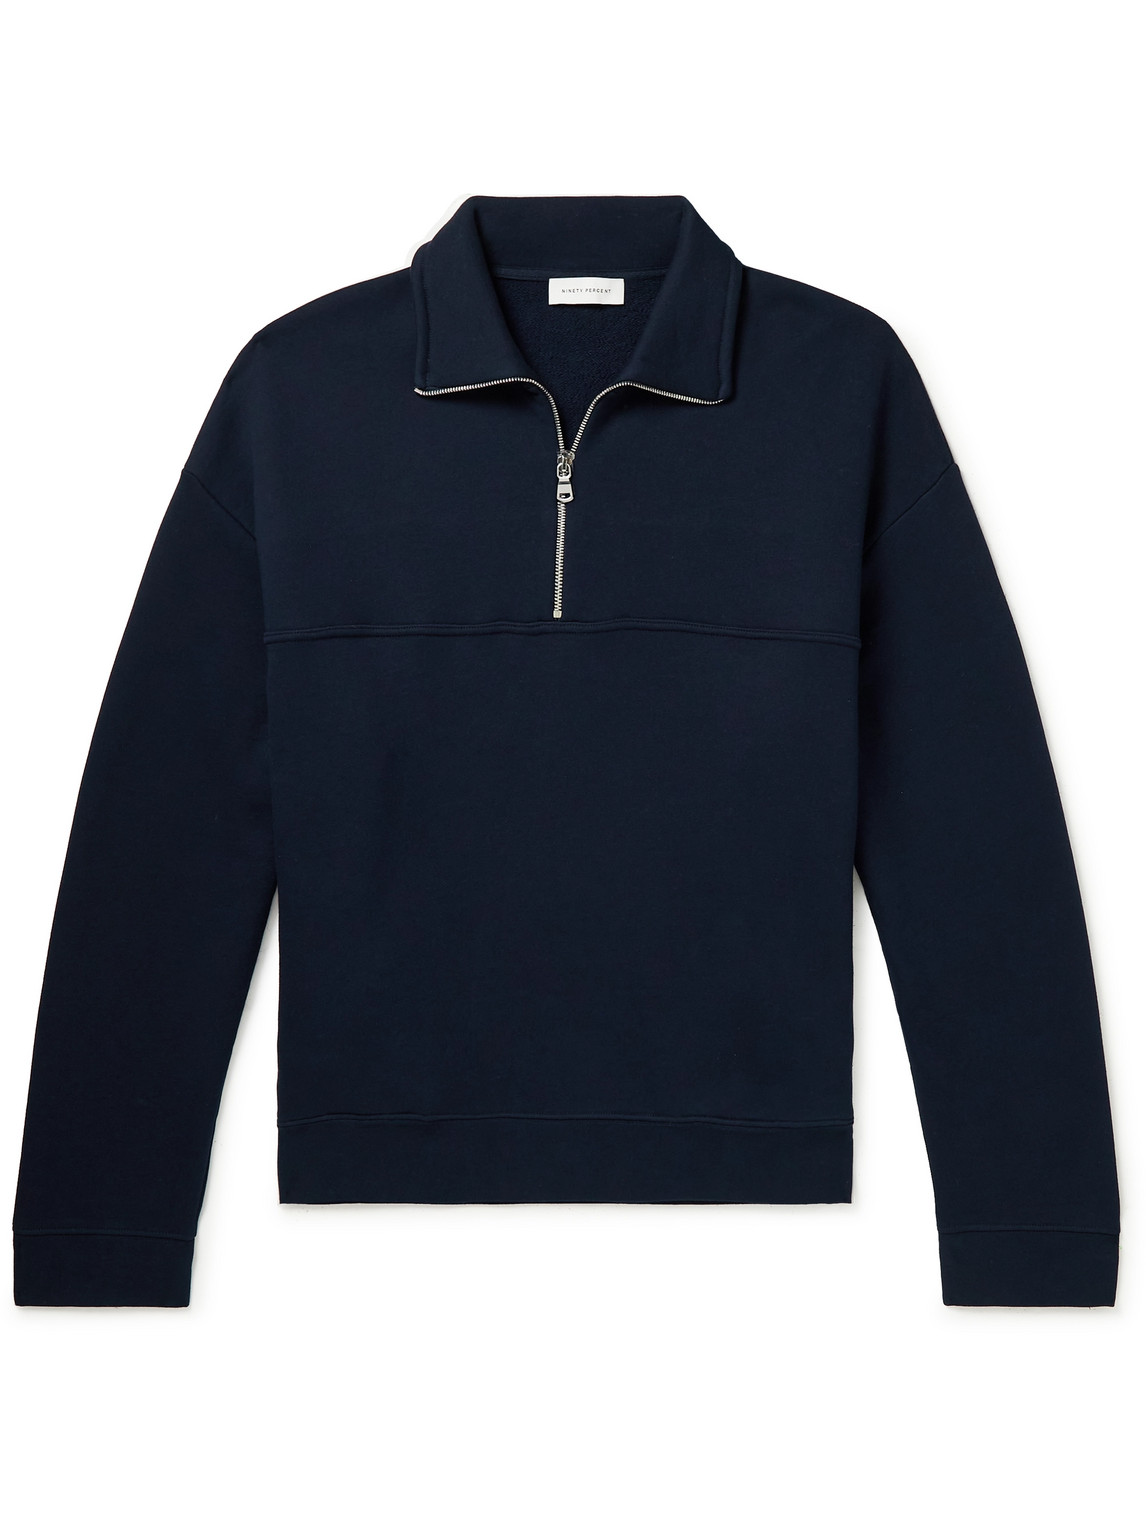 Organic Cotton-Jersey Half-Zip Sweatshirt